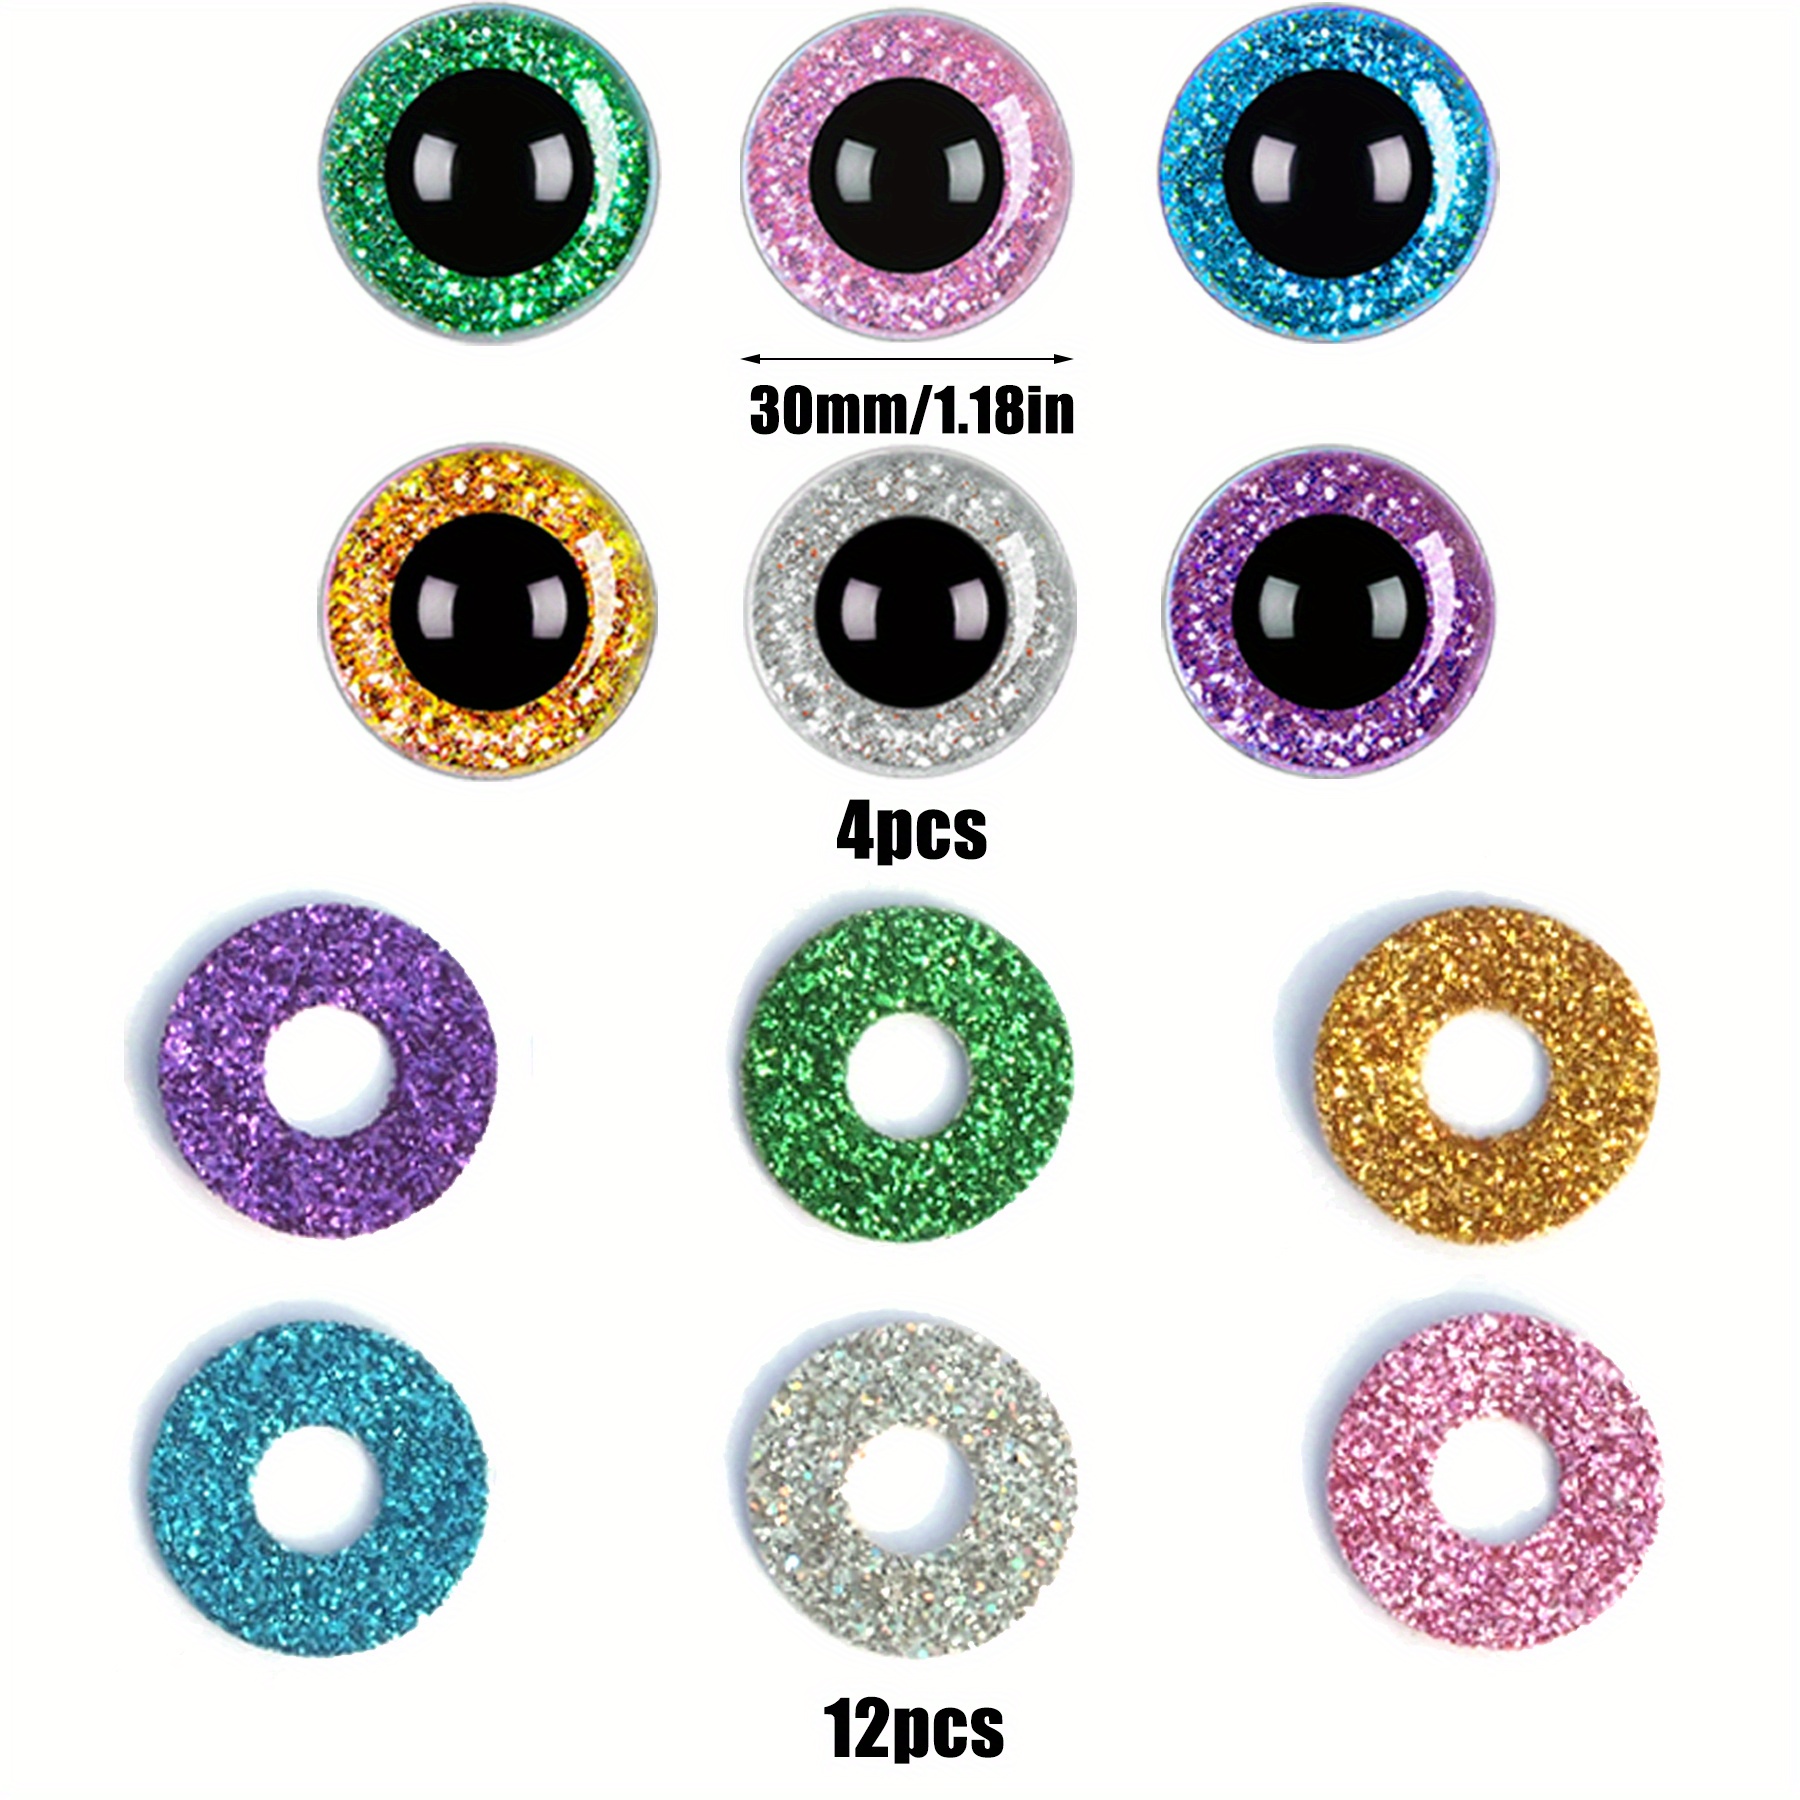 15mm Glitter Safety Eyes, Safety Eyes Washers